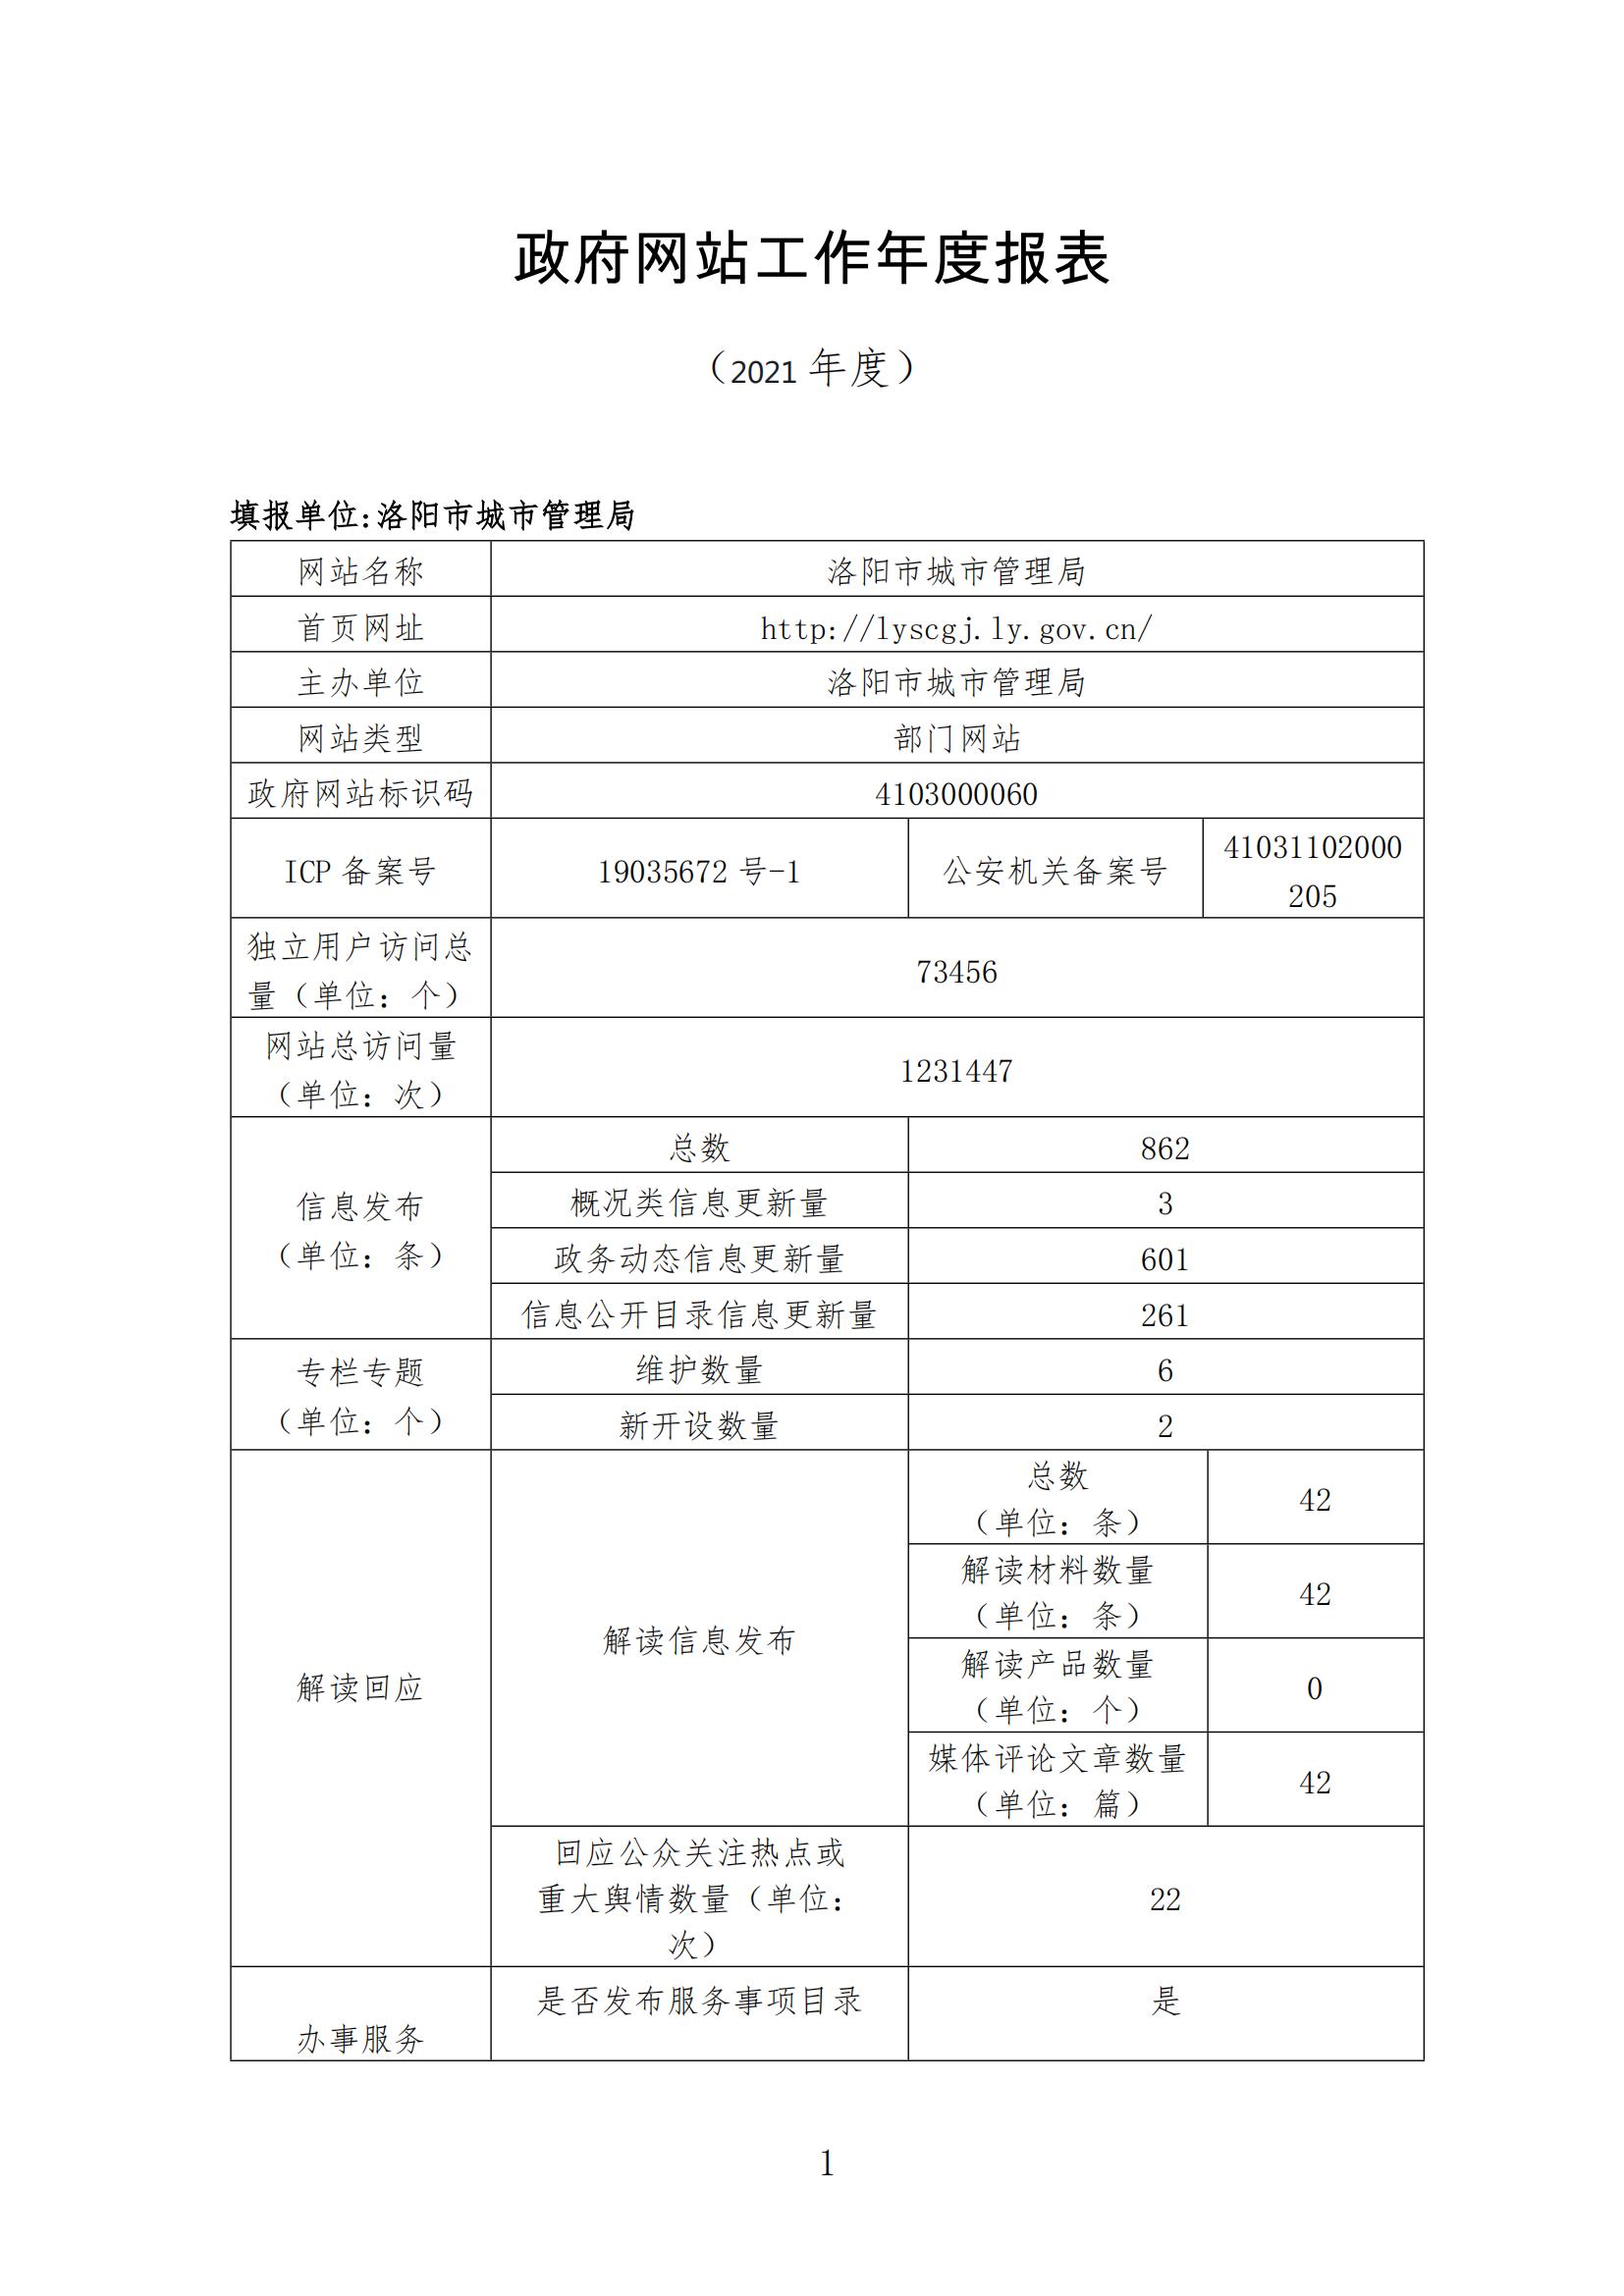 2021政府网站工作年度报表_00(1).jpg